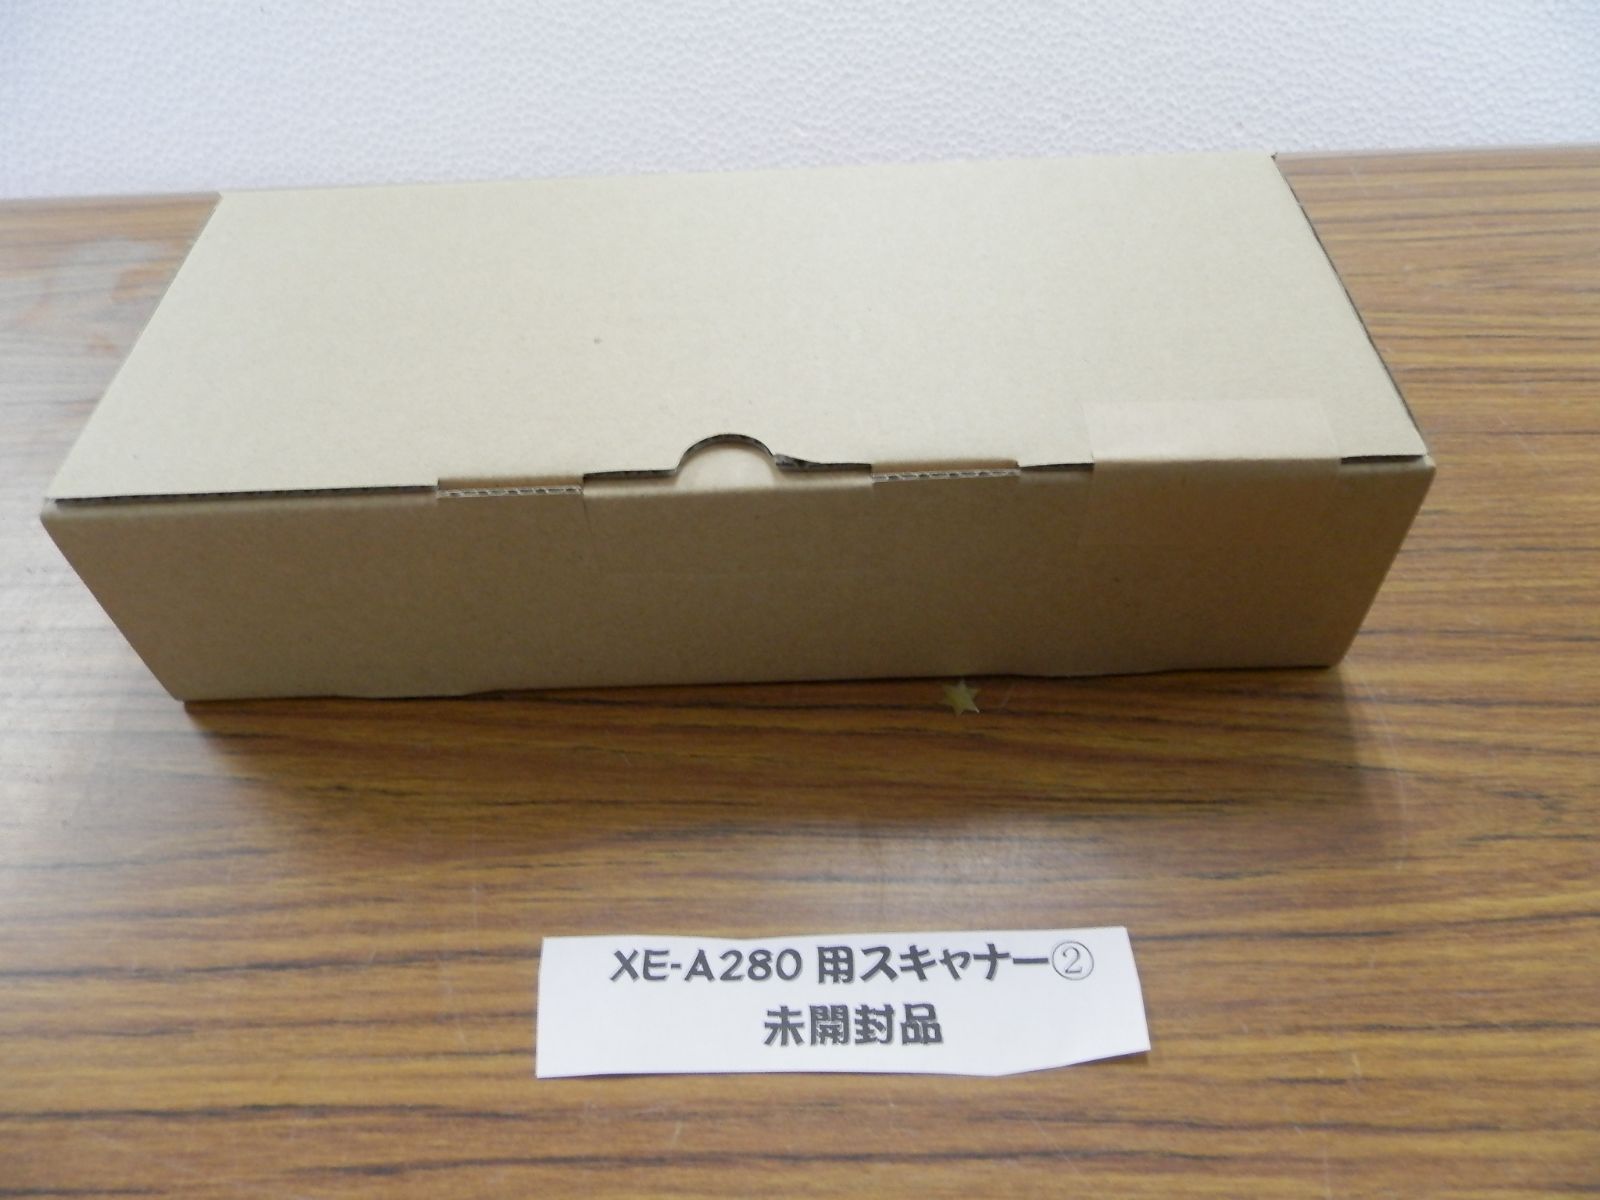 シャープ 電子レジスタ 20部門 スキャナ付 XE-A280 - 2